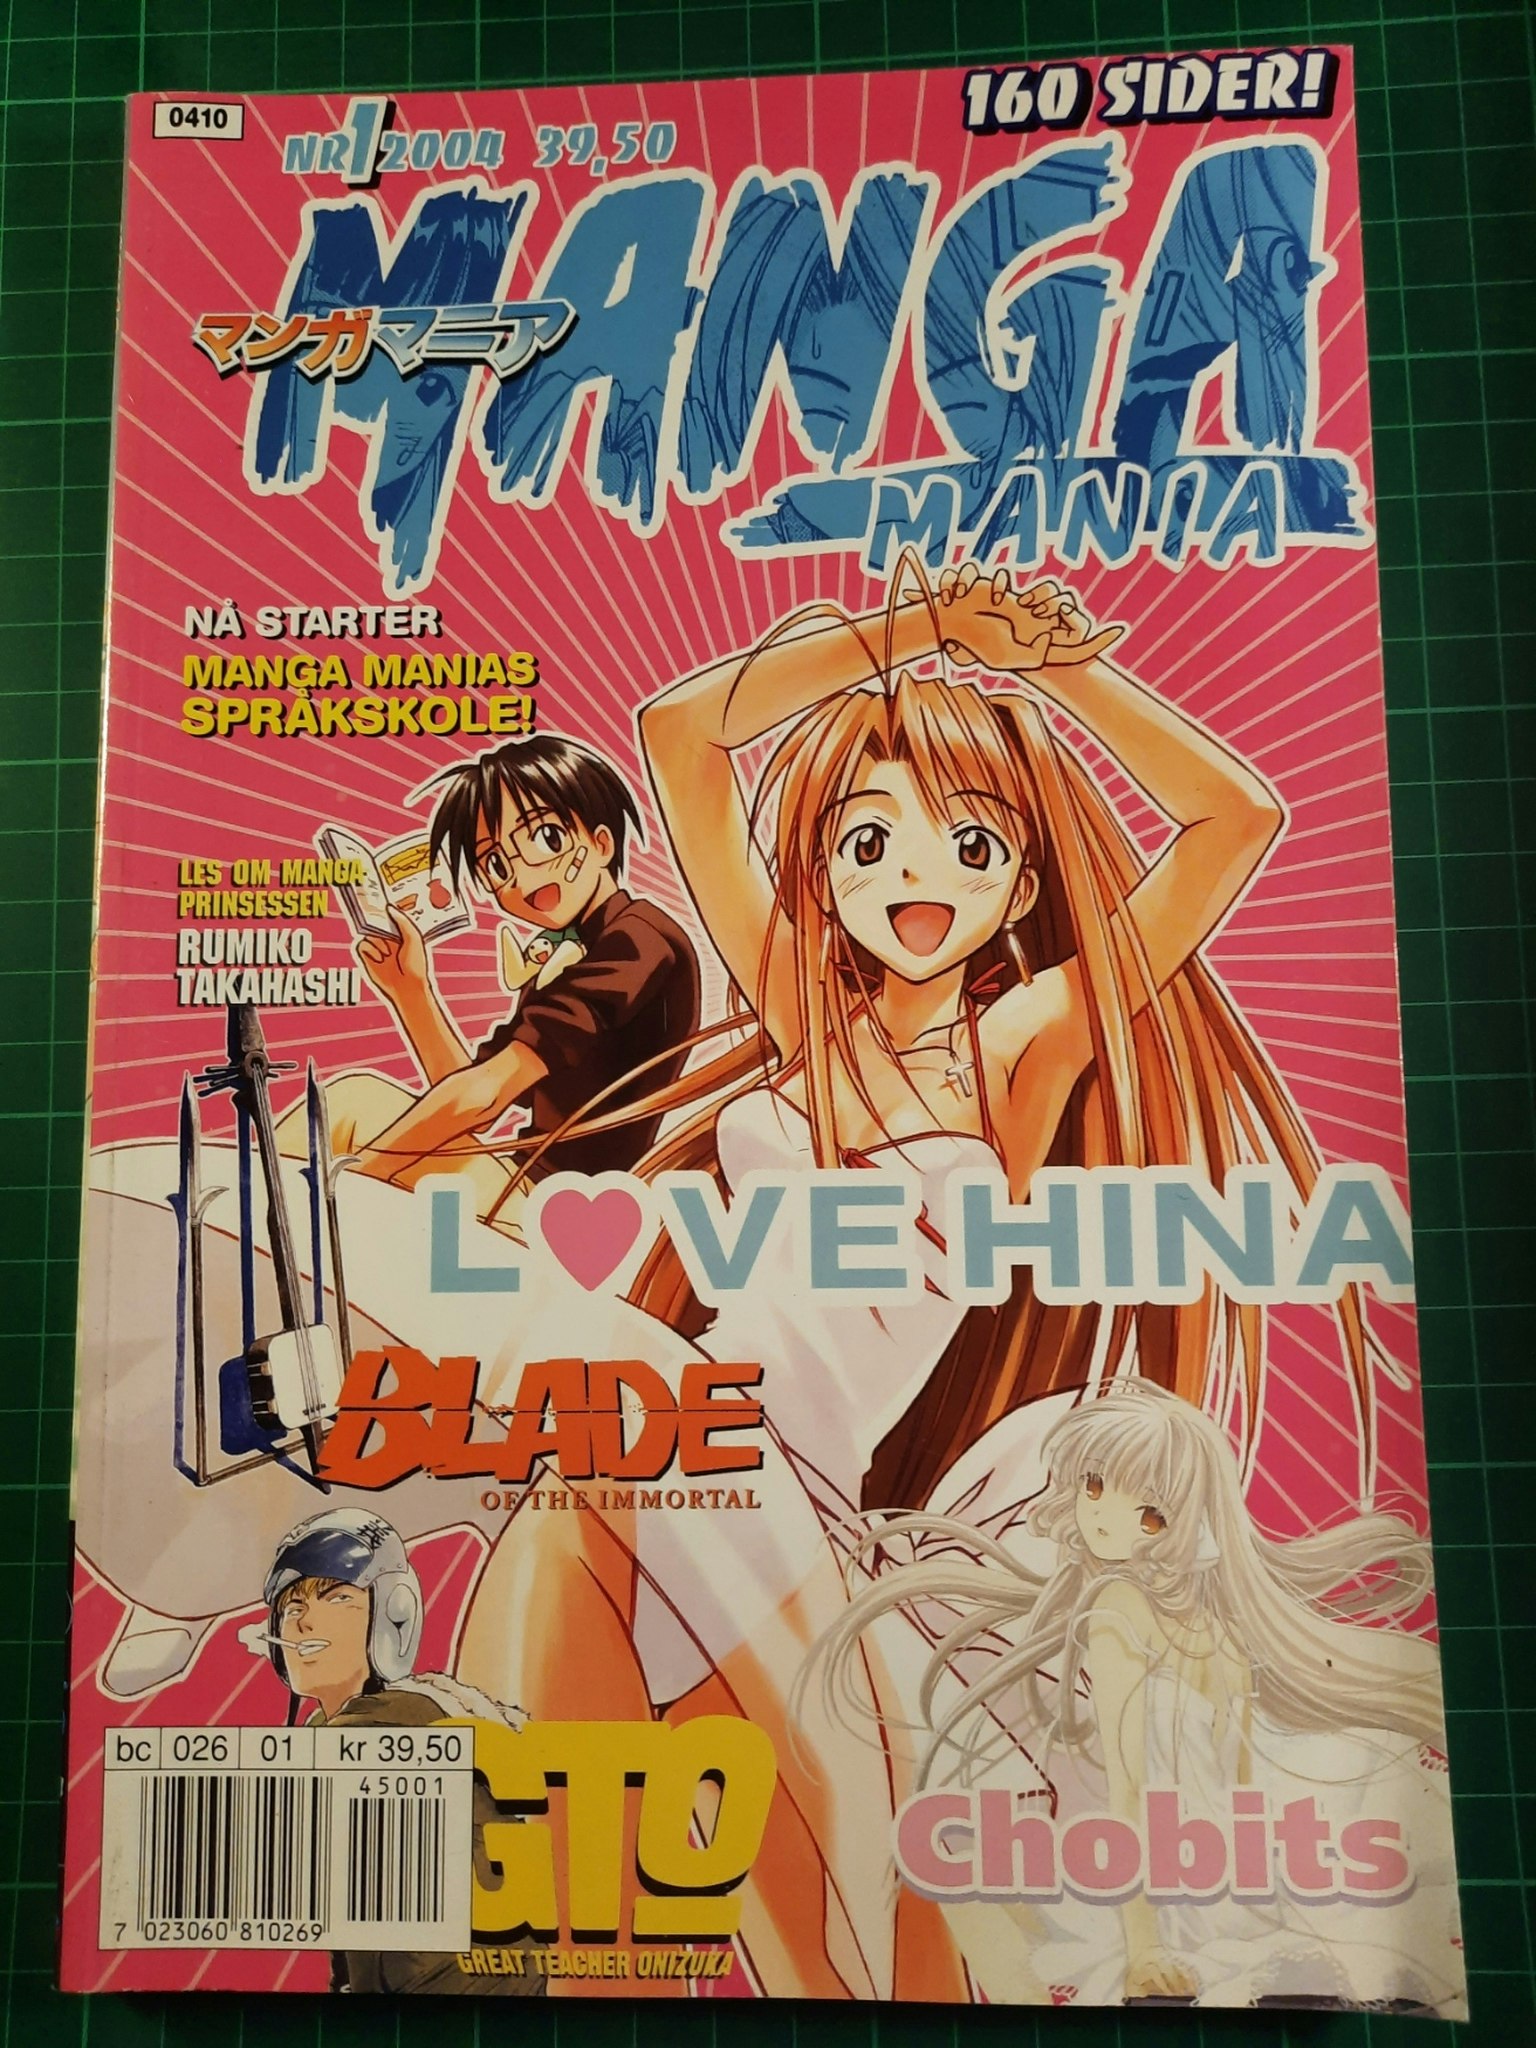 Manga Mania 2004 - 01